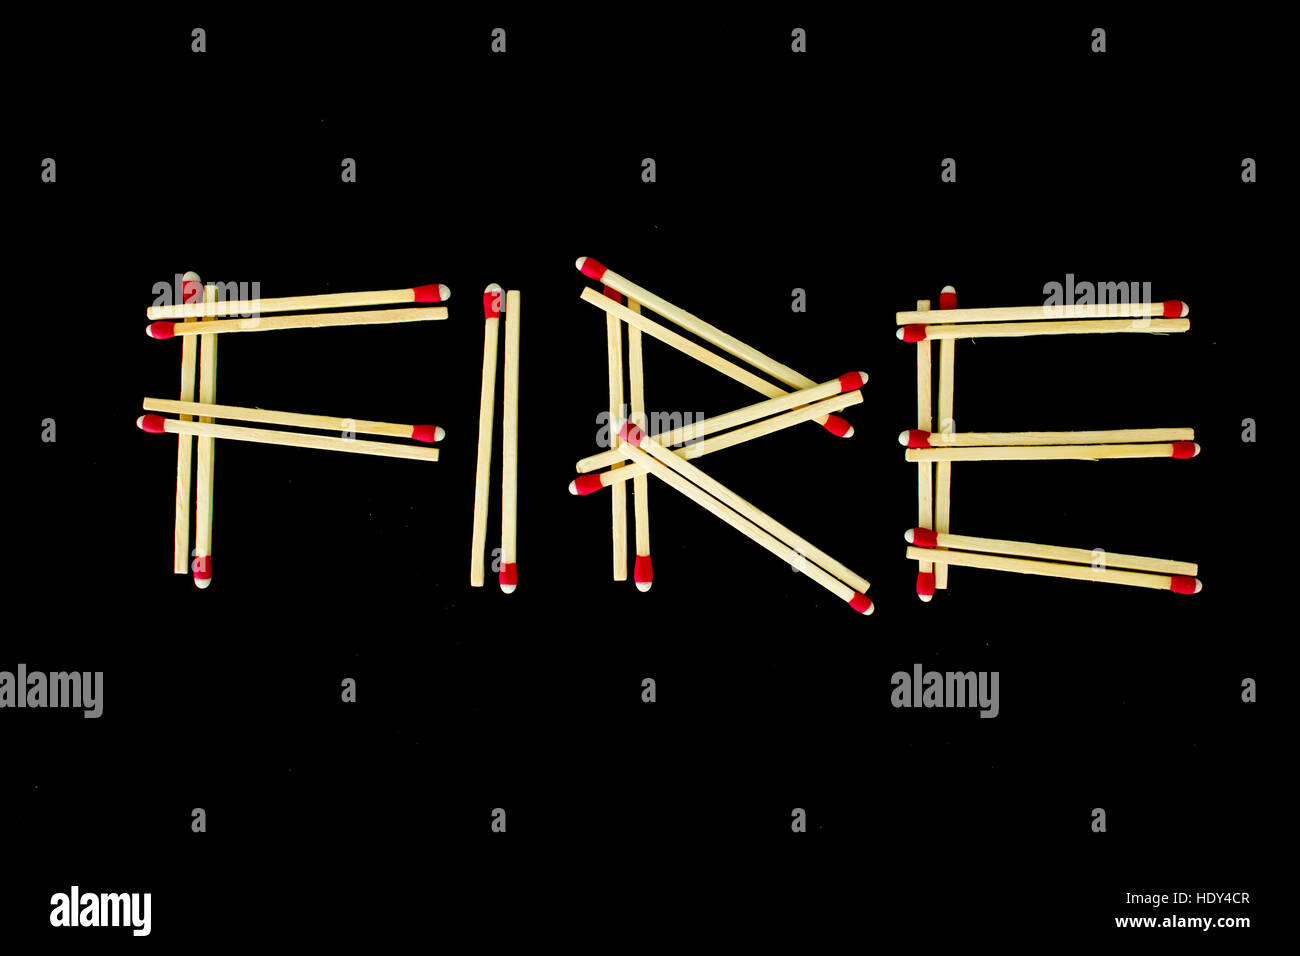 Le mot 'fire' écrit avec des allumettes, isolé sur un fond noir. Photographié à partir de ci-dessus. Banque D'Images